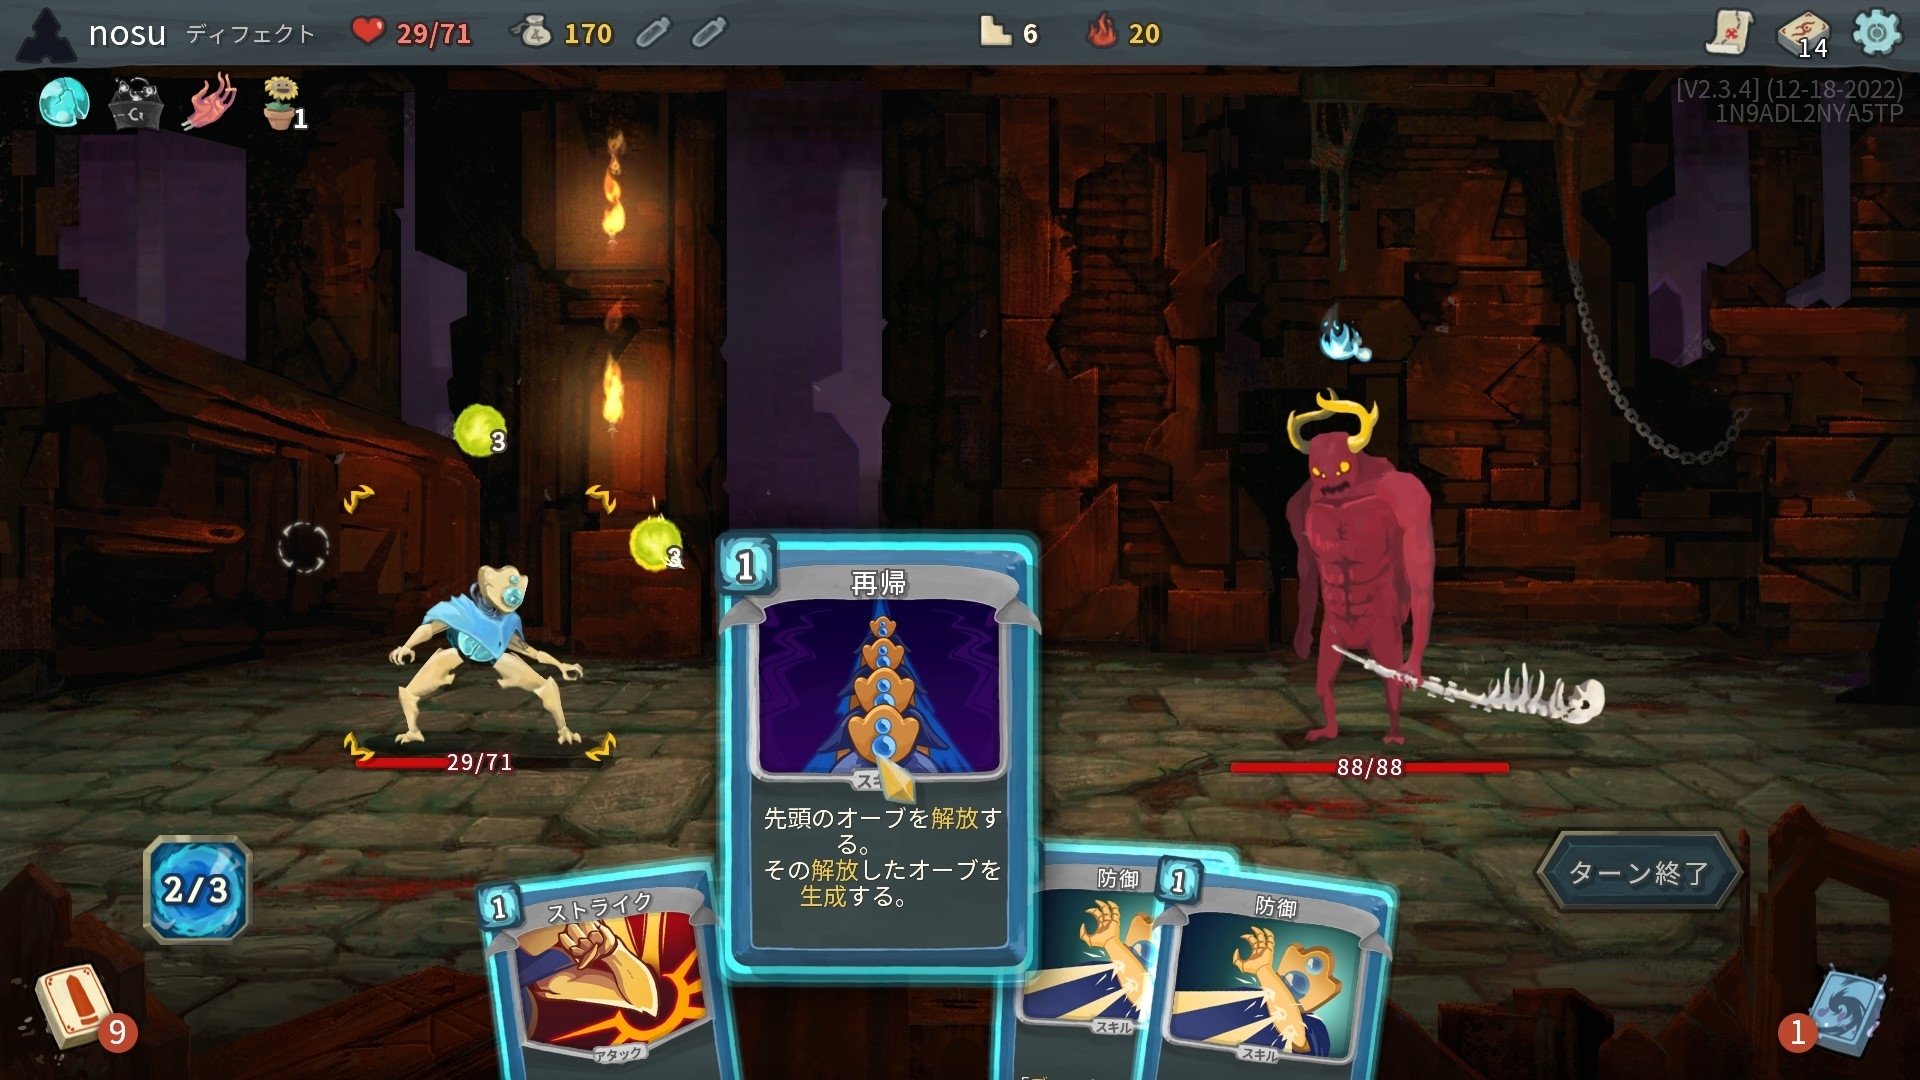 ゲームのスクリーンショットで、キャラクターがカードを使って戦う様子が描かれています。